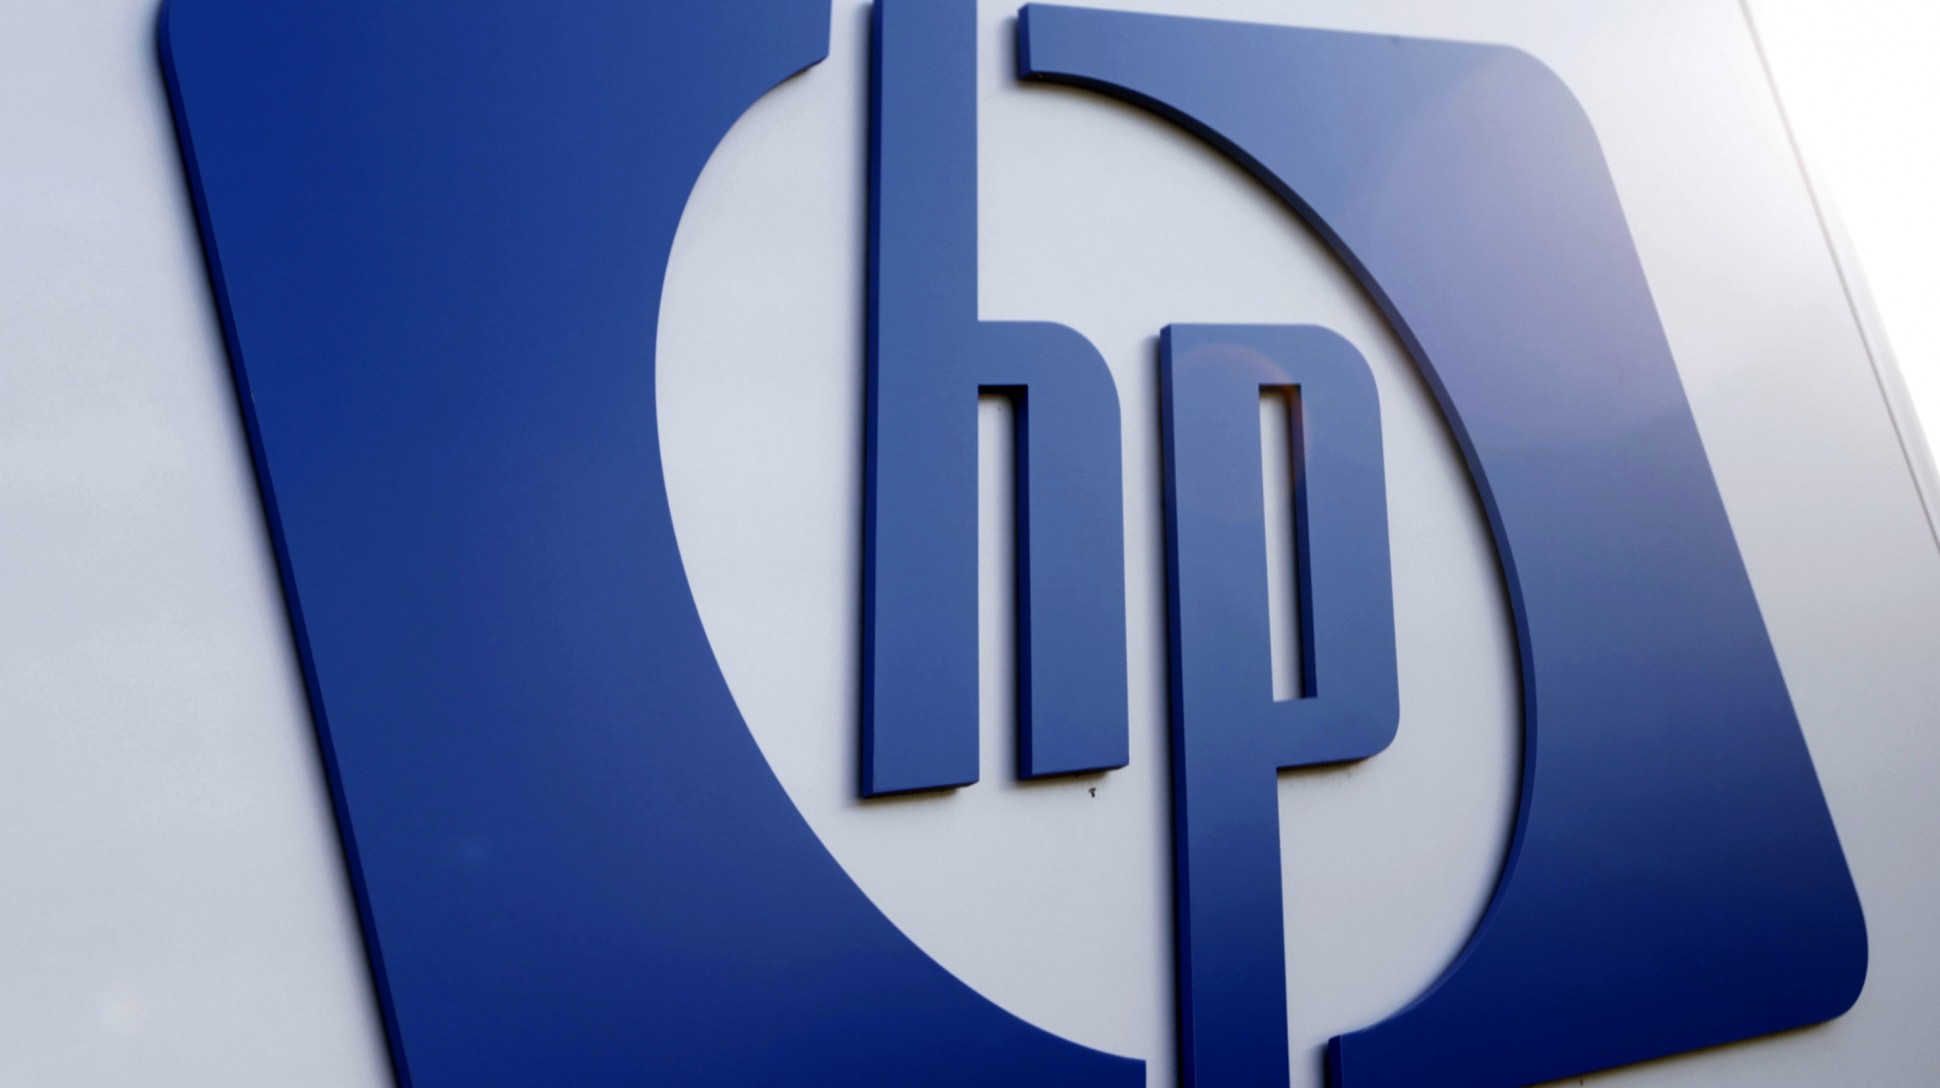 HP logo